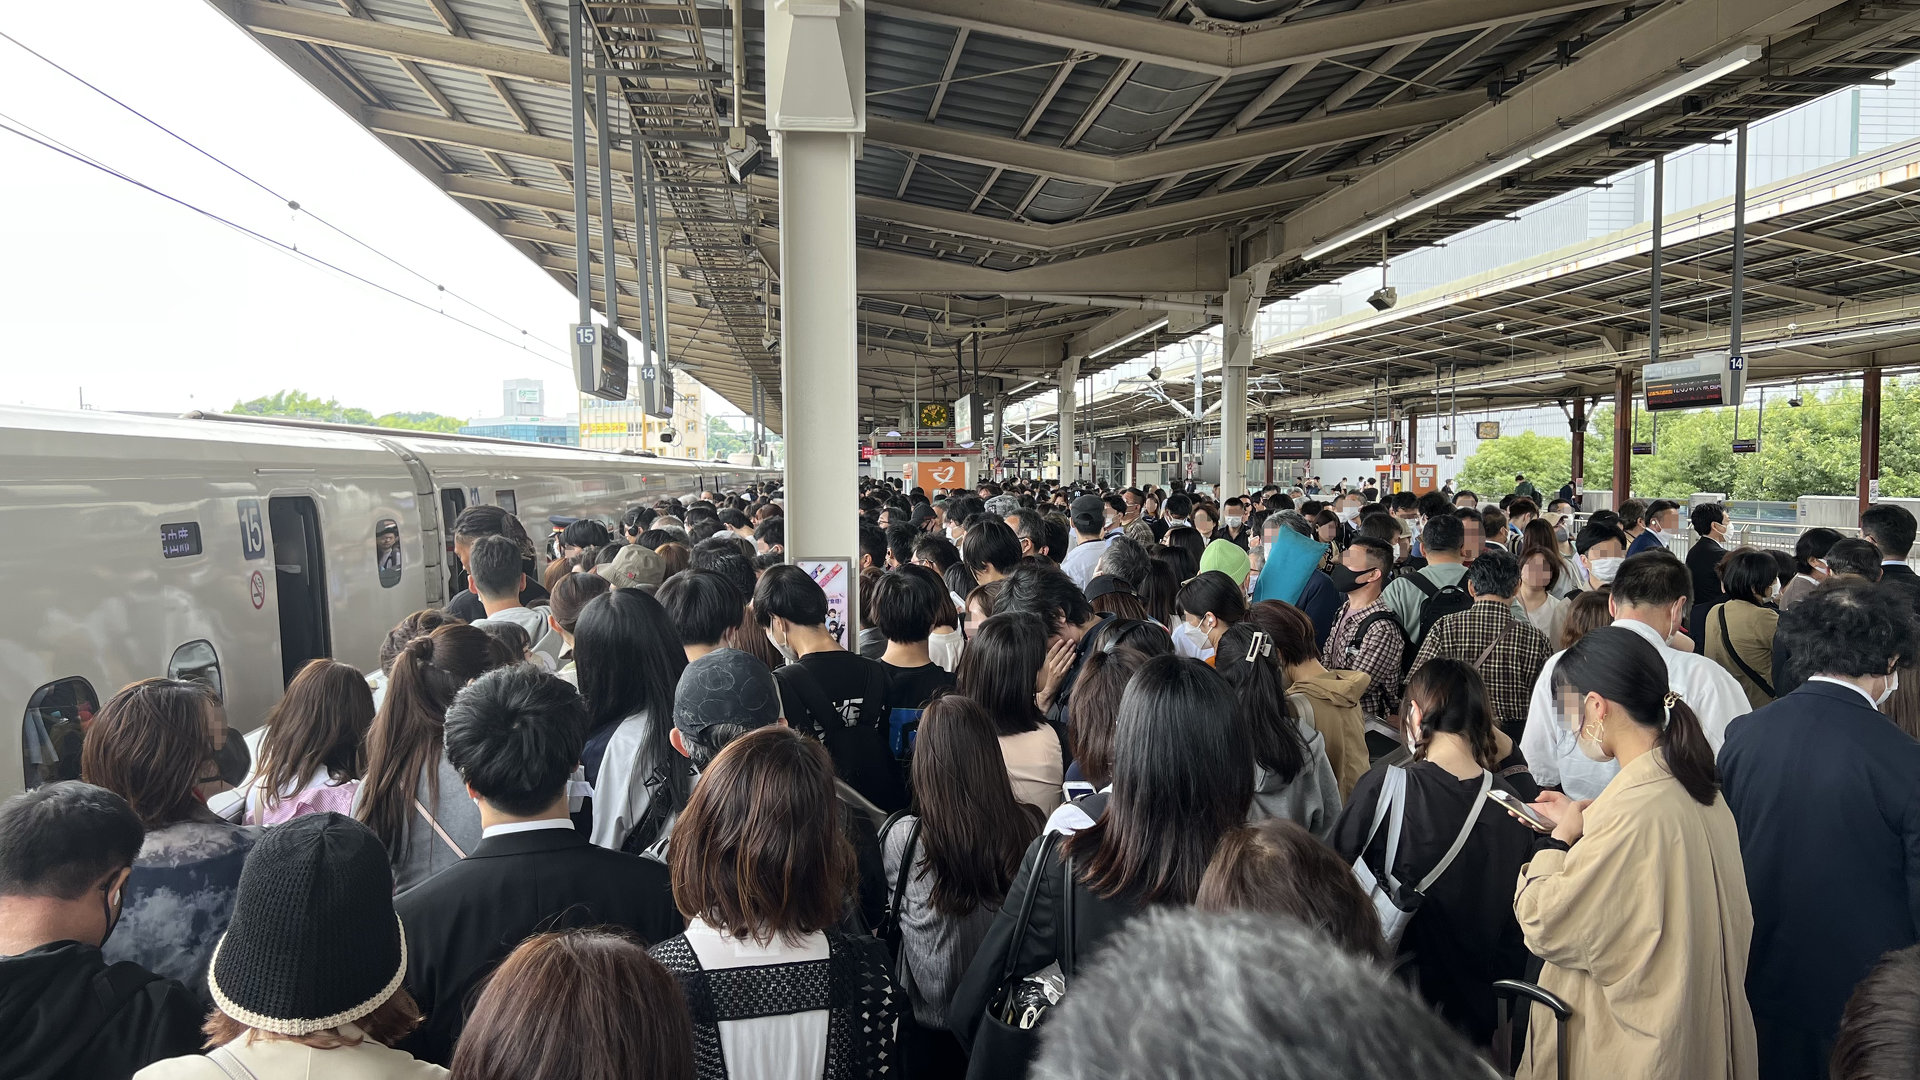 東海道新幹線の運休で大混乱、JR東海の対処は適切だったか